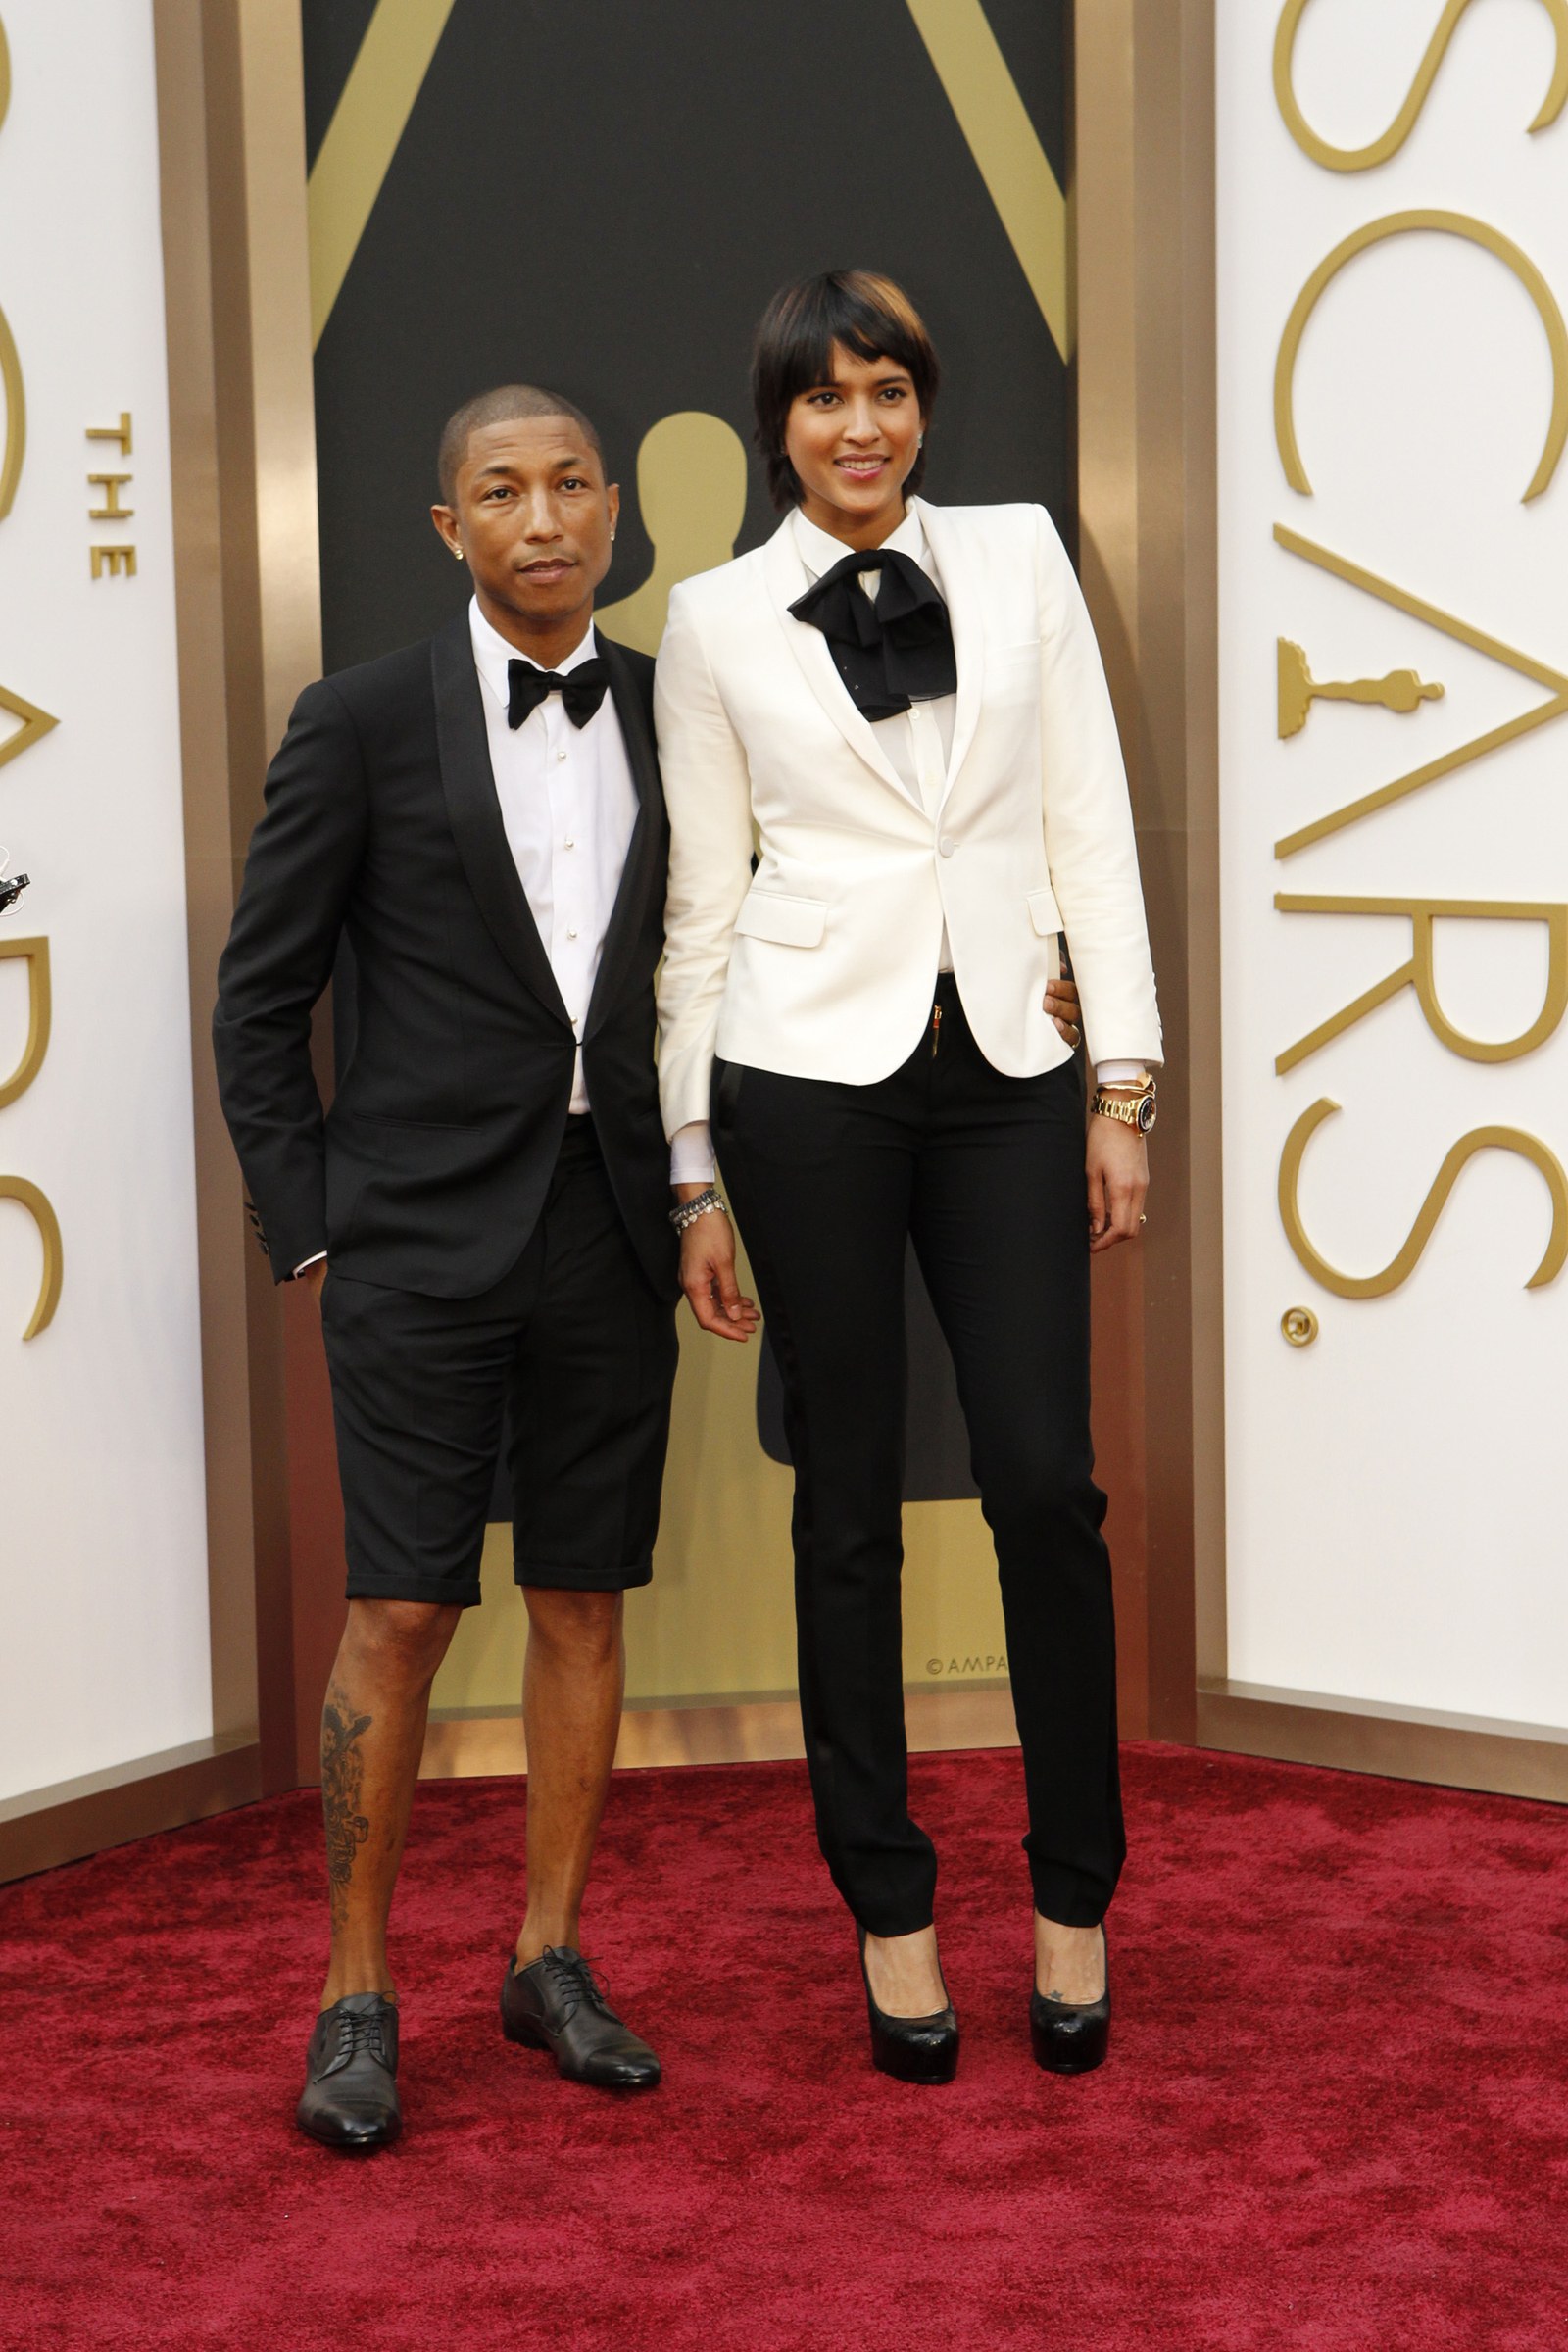 Vào năm 2014, Pharrell đã bỏ các bộ trang phục nam truyền thống để ủng hộ một bộ tuxedo Lanvin ngắn, hoàn chỉnh với quần short không phải quần dài. Anh cũng đi giày không mang vớ. Vẻ ngoài táo bạo đã khiến các nhà phê bình chia rẽ nhưng đã khiến ca sĩ trở thành một trong những người đàn ông mạo hiểm nhất Hollywood Hollywood.